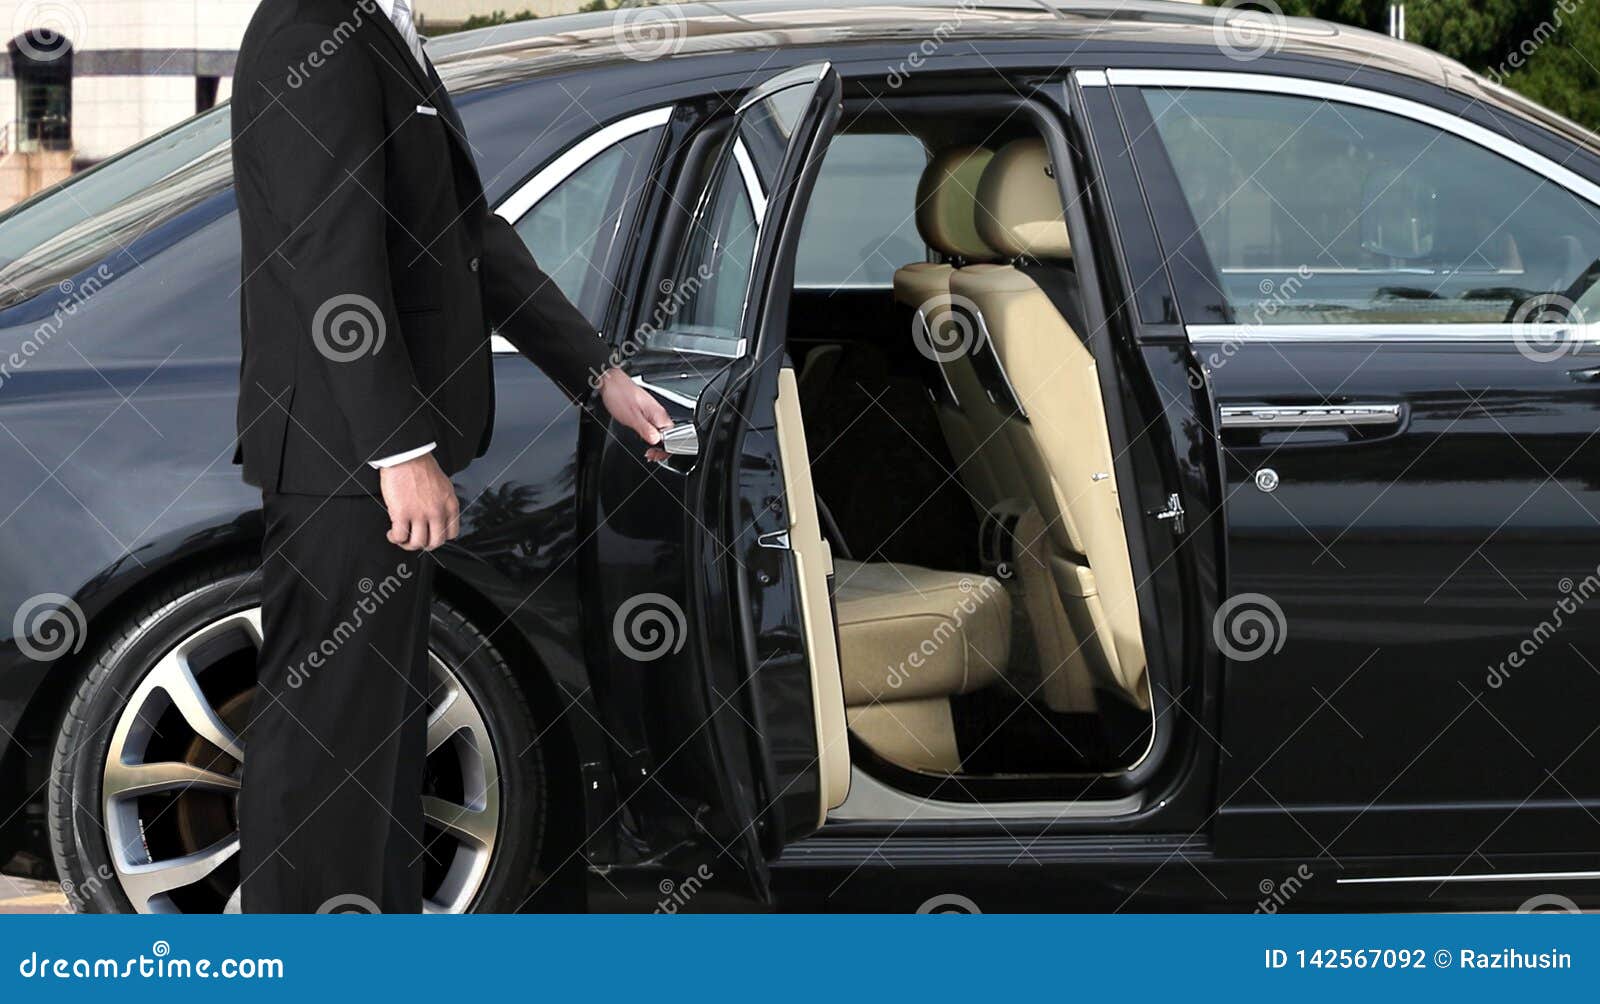 chauffeur opening car door